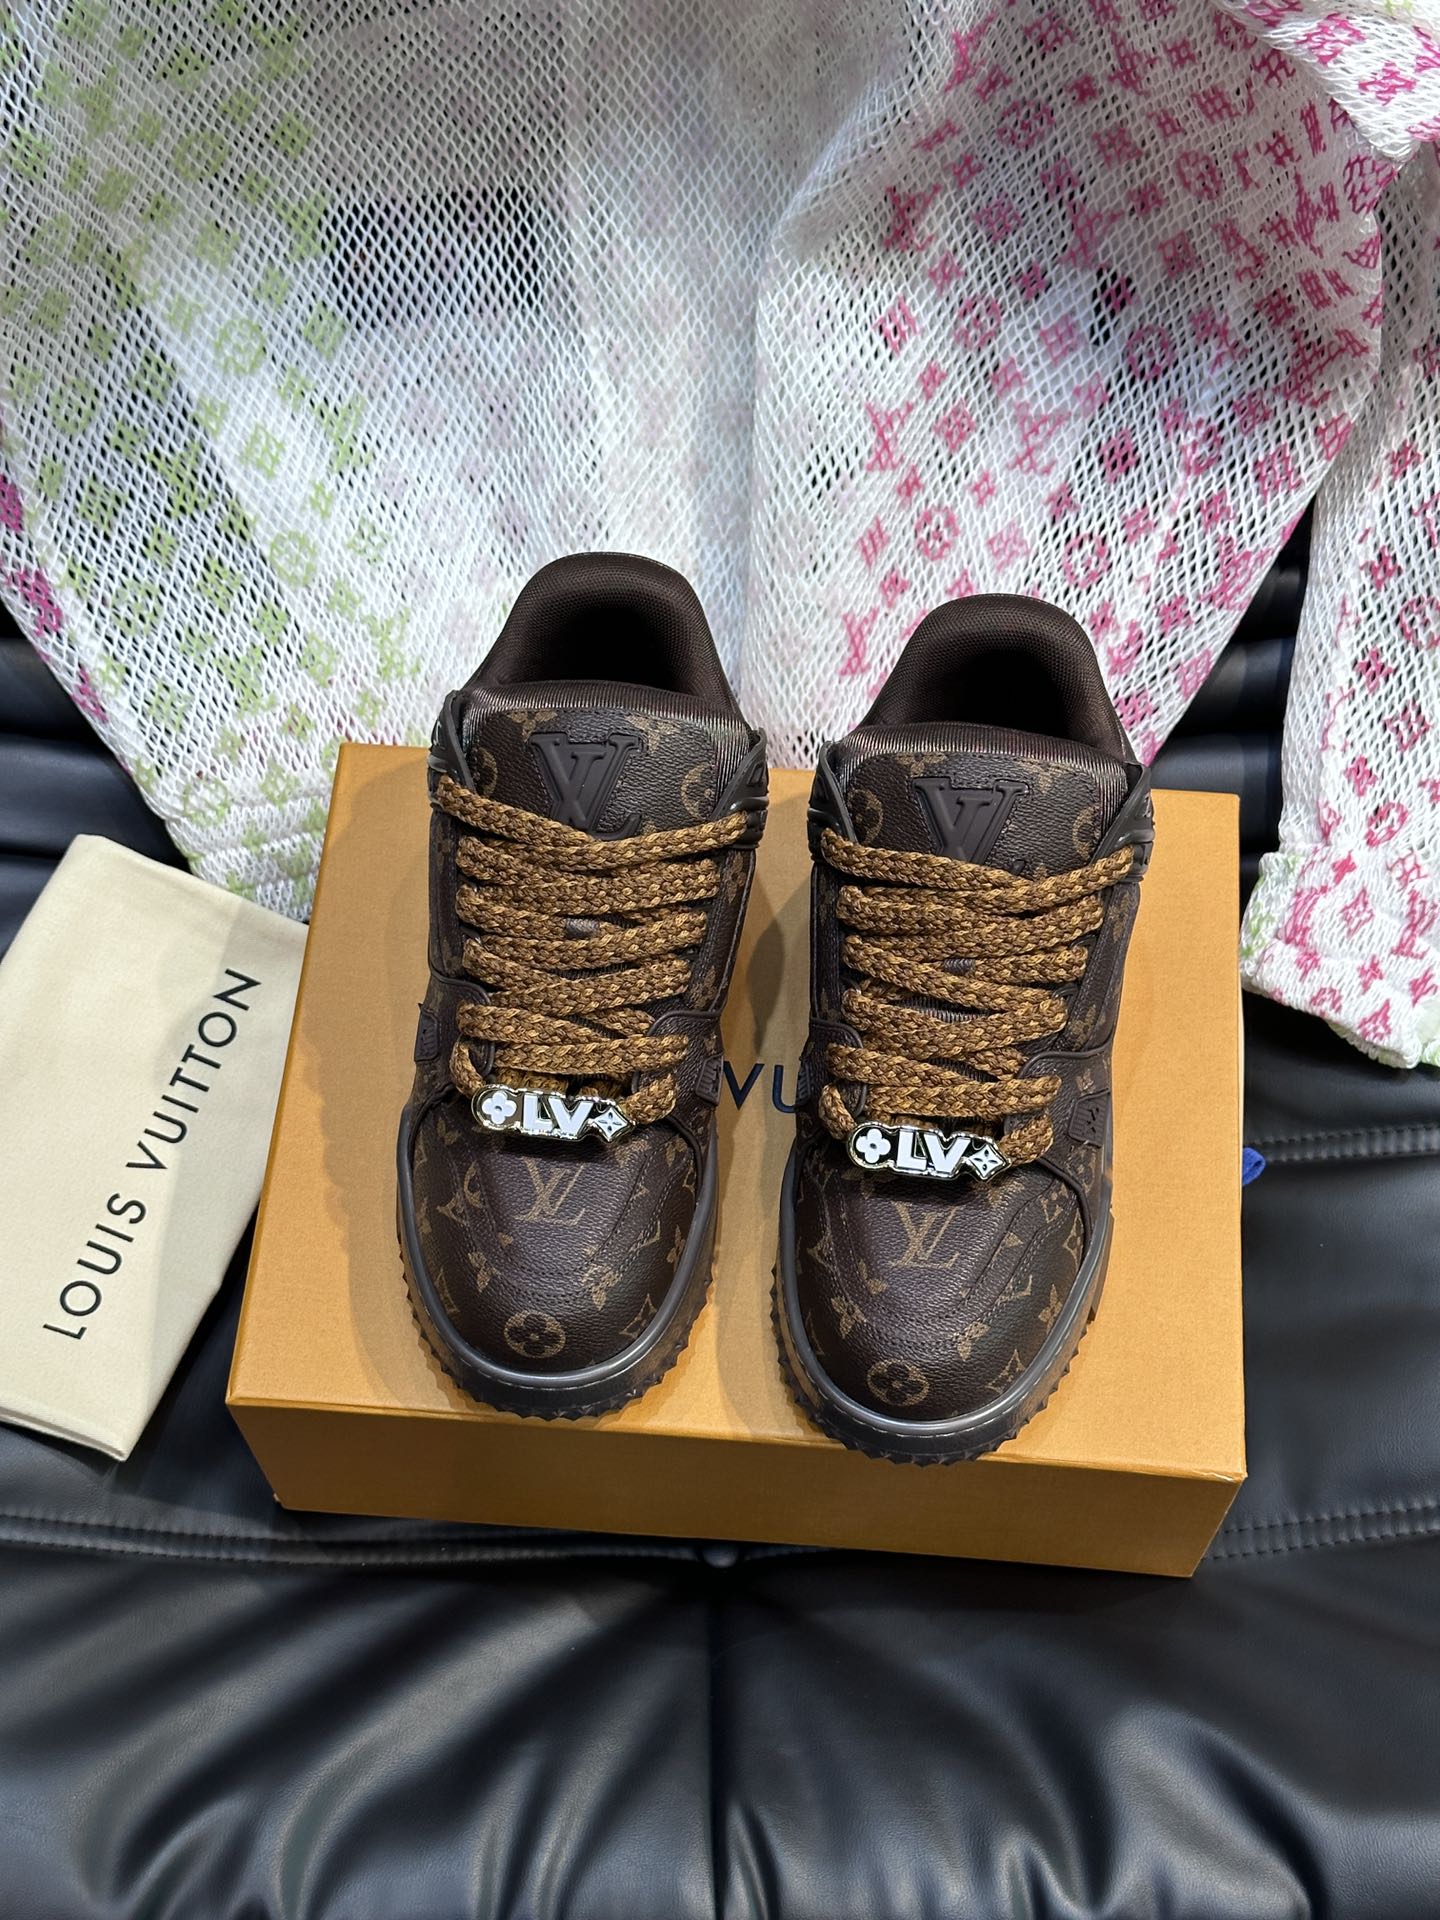 מהי העתק באיכות הגבוהה ביותר
 לואי ויטון נעליים סניקרס גברים פבריק גומא אוסף האביב/הקיץ רגיל